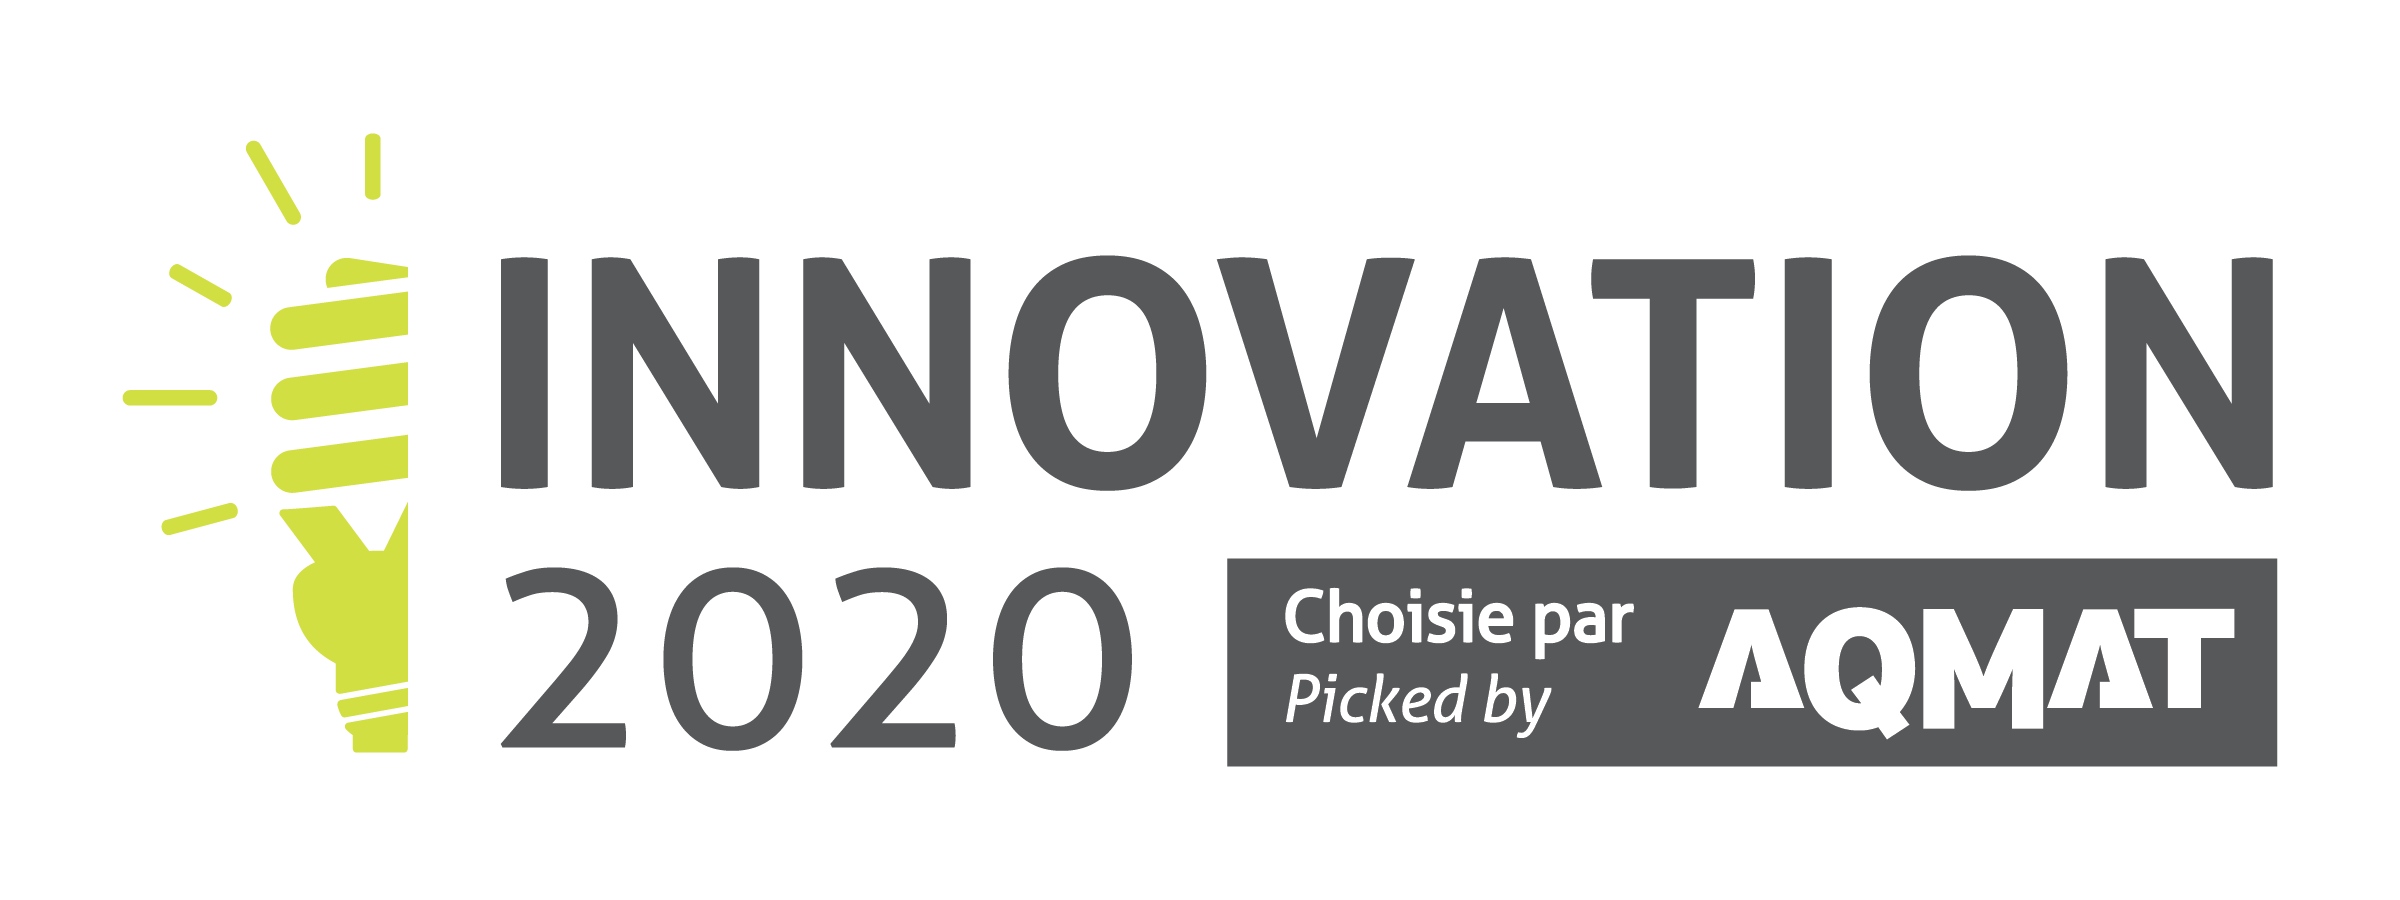 Produit Innovation 2020